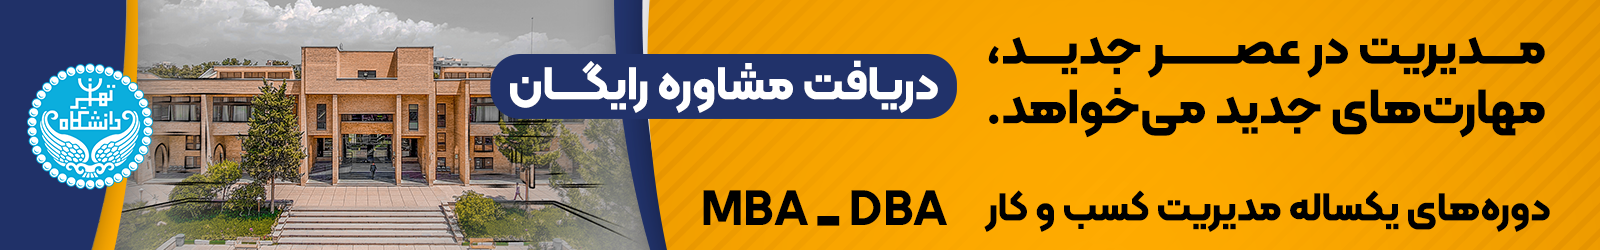 ثبت نام دوره mba و dba دانشگاه تهران